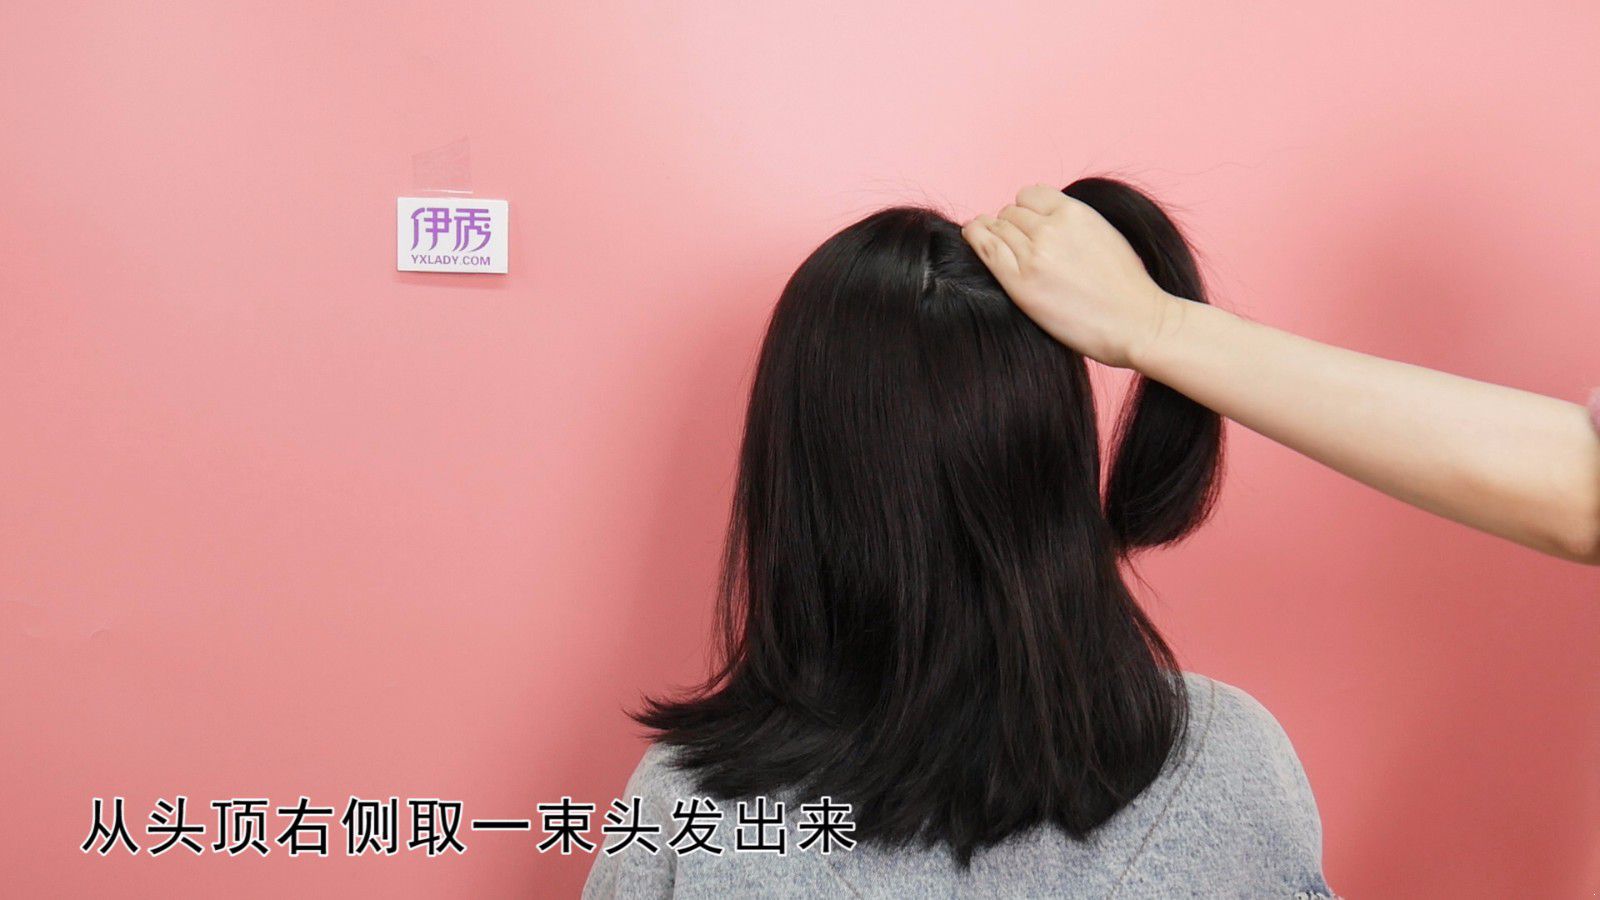 短发怎么绑 简单又好看的短发发型教程_伊秀视频|yxlady.com